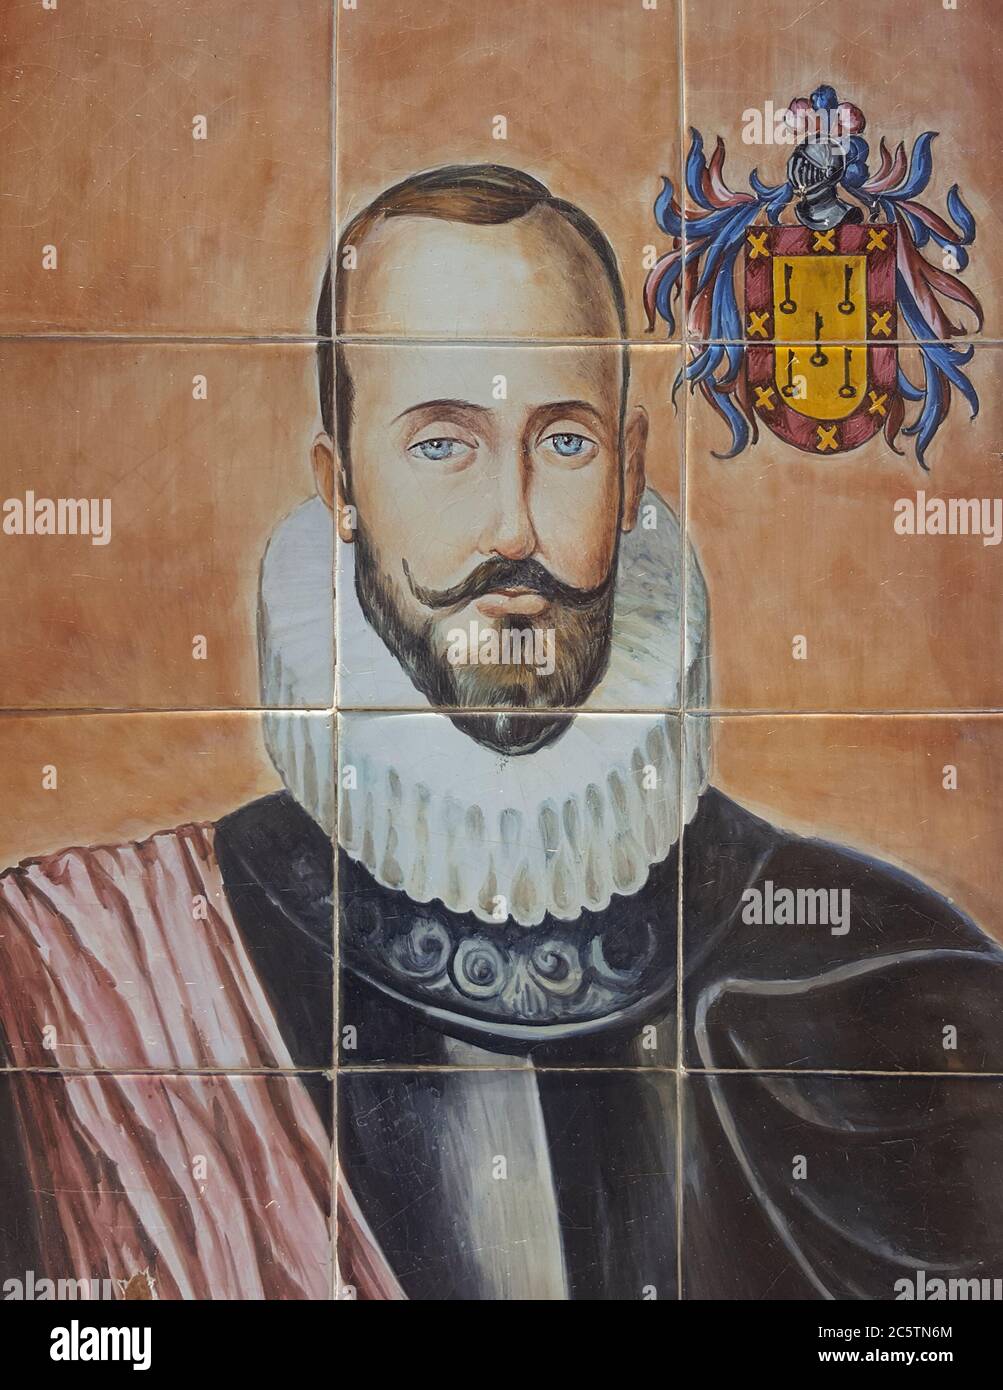 Portrait Nuno de Chaves sur panneau de carreaux vitrés. Artiste inconnu Banque D'Images